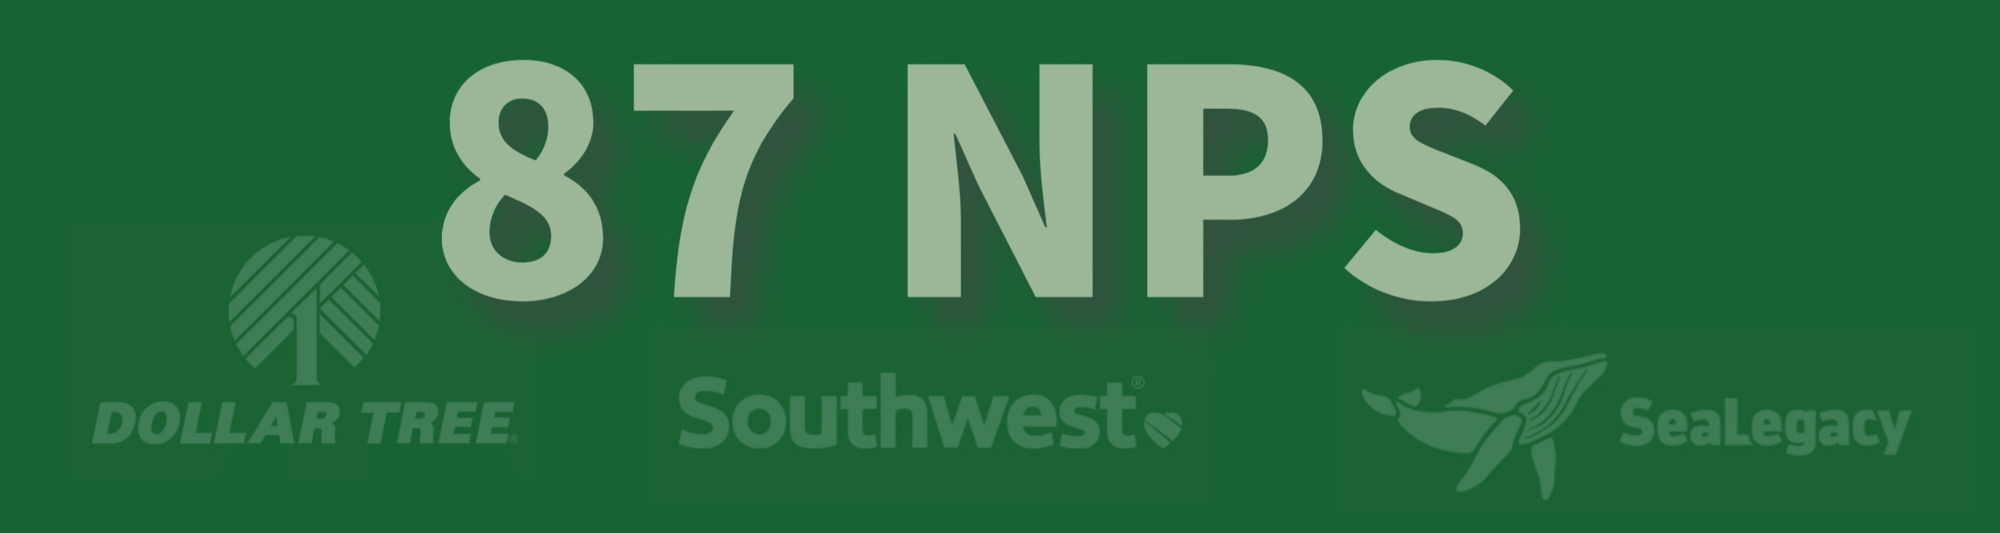 NPS centered